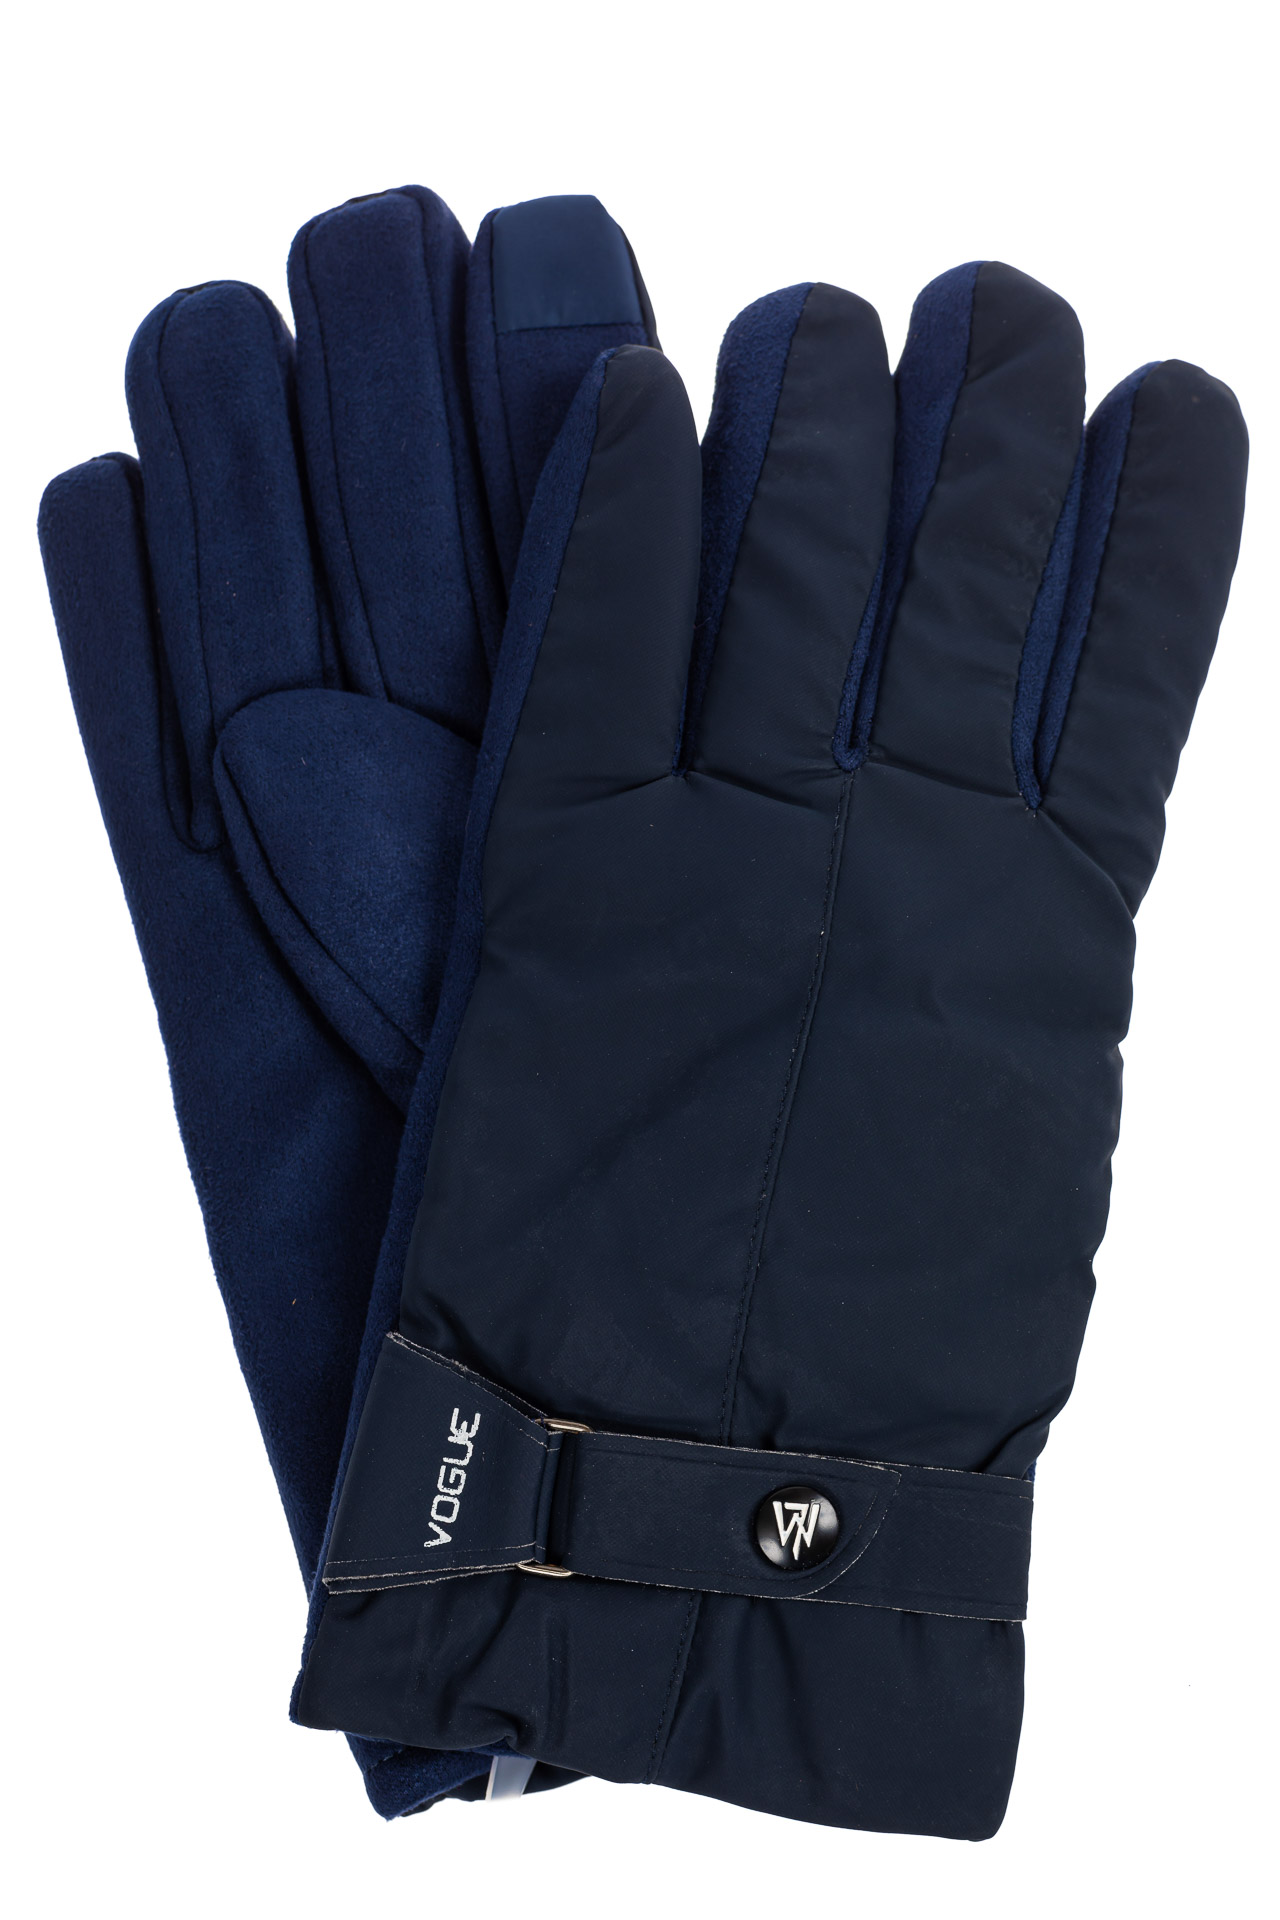 Утепленные перчатки мужские с пояском, цвет синий